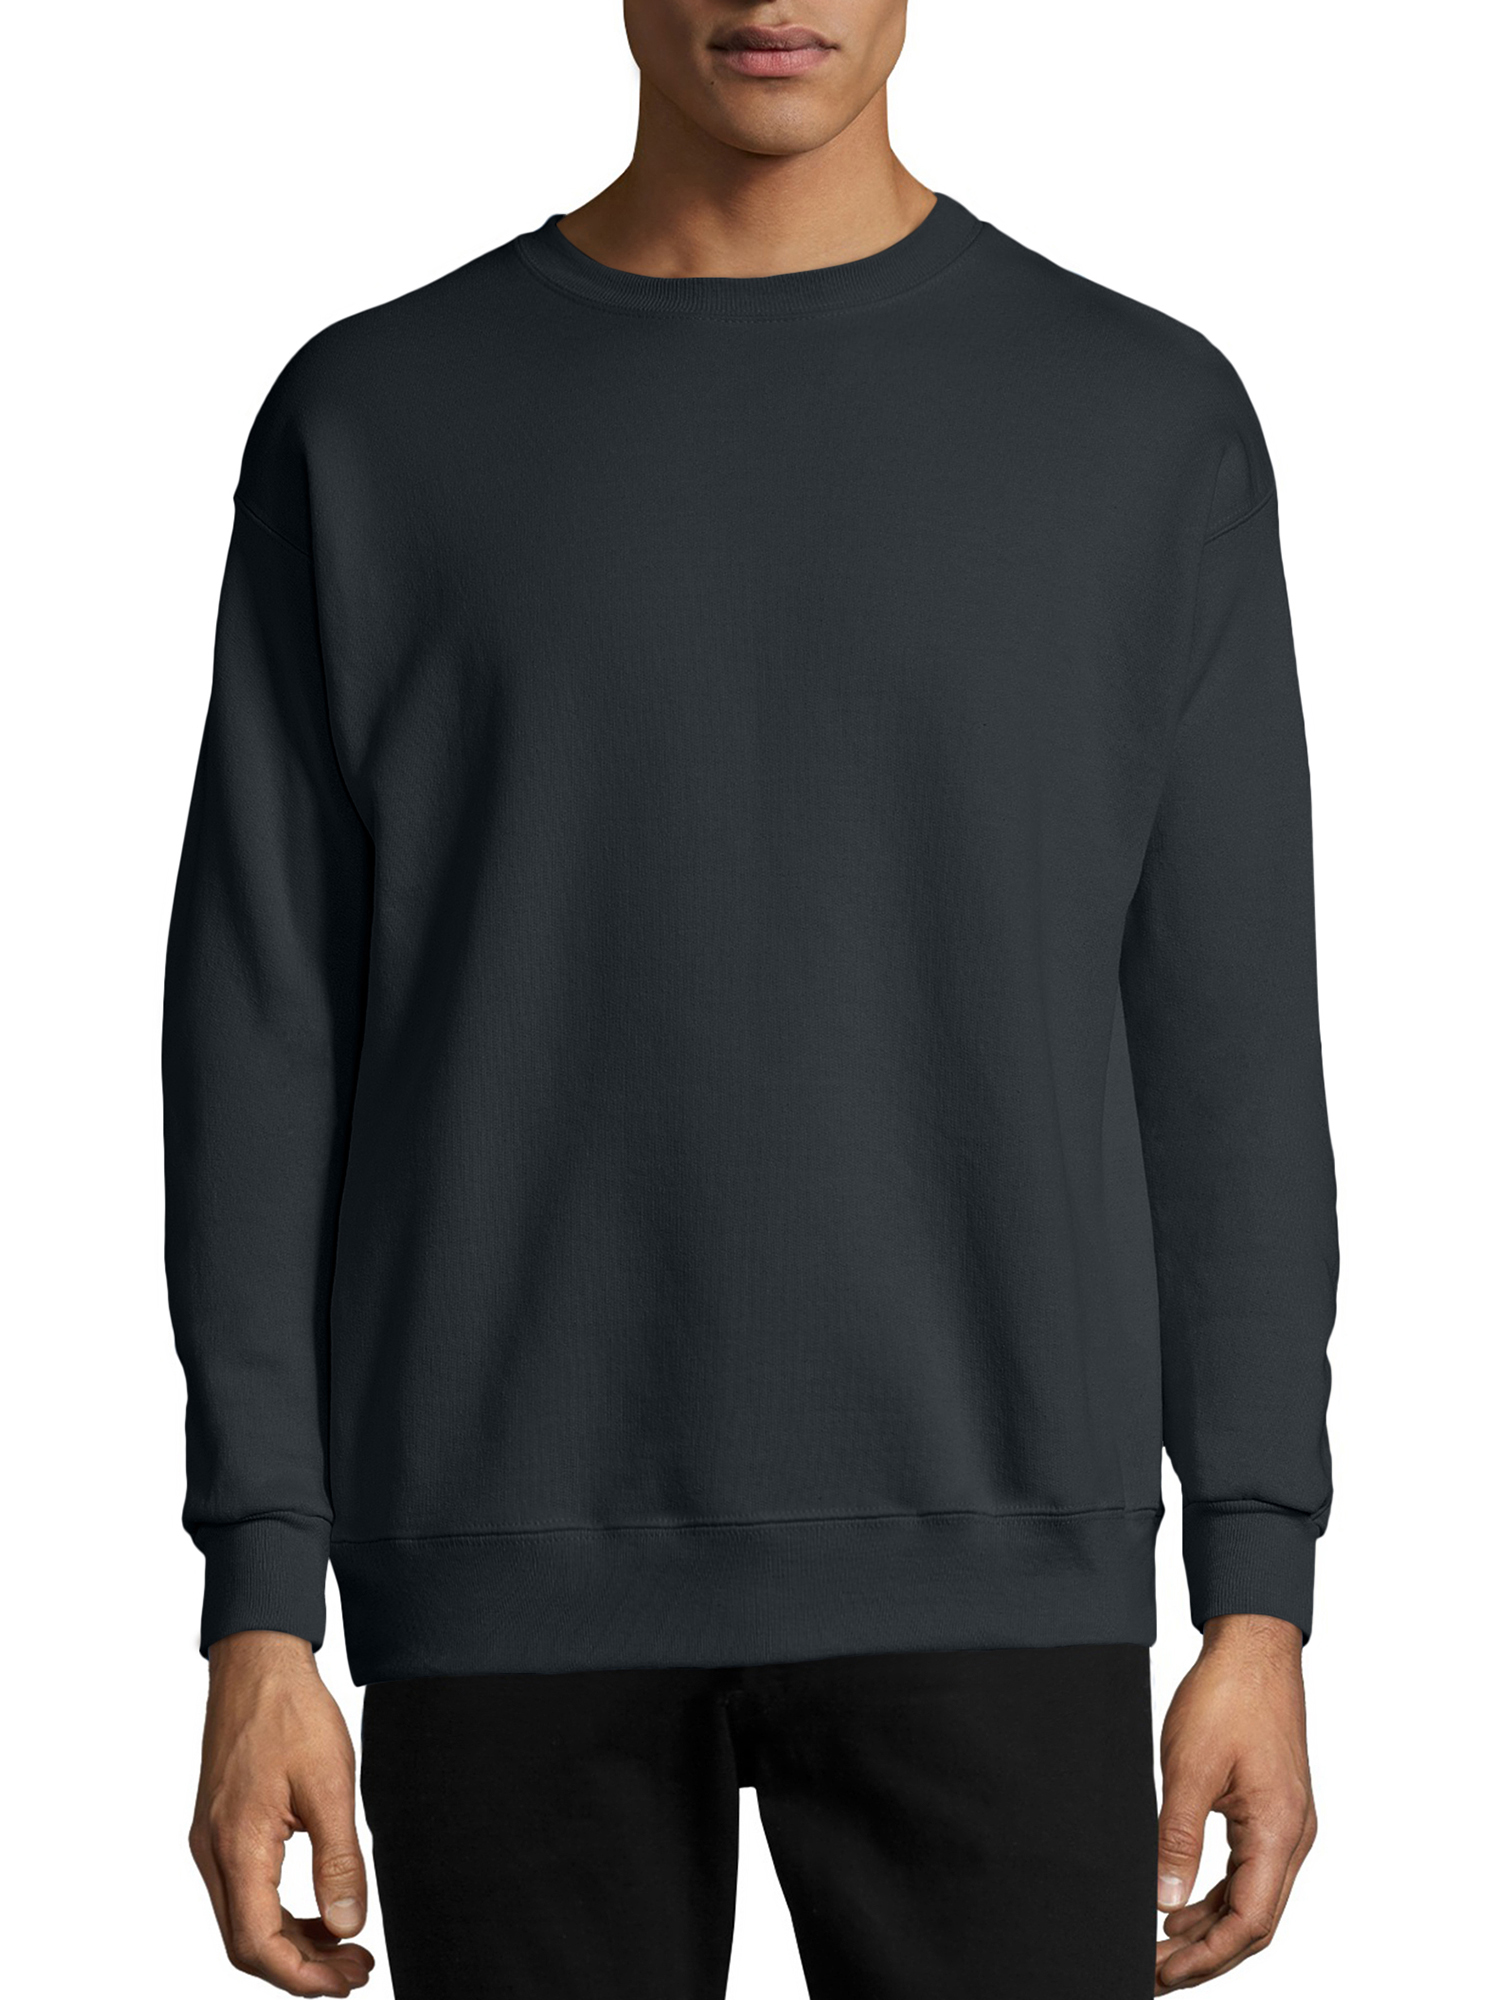 Hanes Men's and Big Men's EcoSmart Fleece Sweatshirt, up to Size 5XL ...